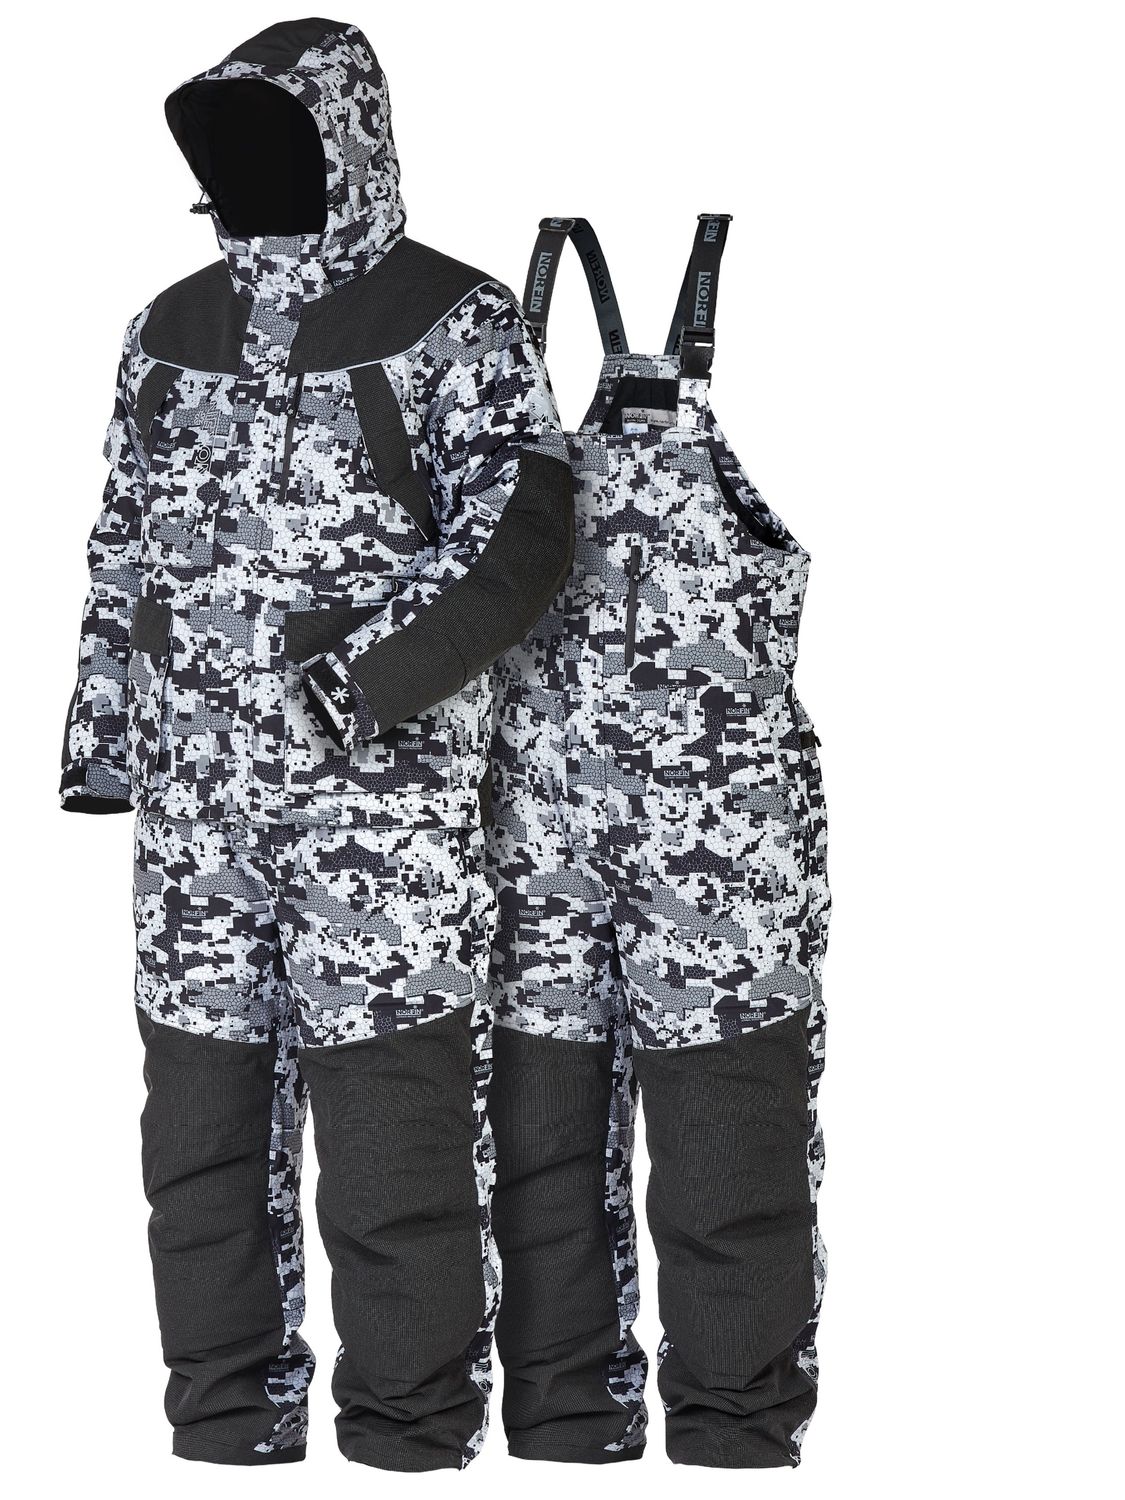 Универсальный зимний костюм Norfin Explorer 2 Camo рекомендован для охоты, туризма на природе, катания на снегоходе суровой зимой или рыбалки в межсез